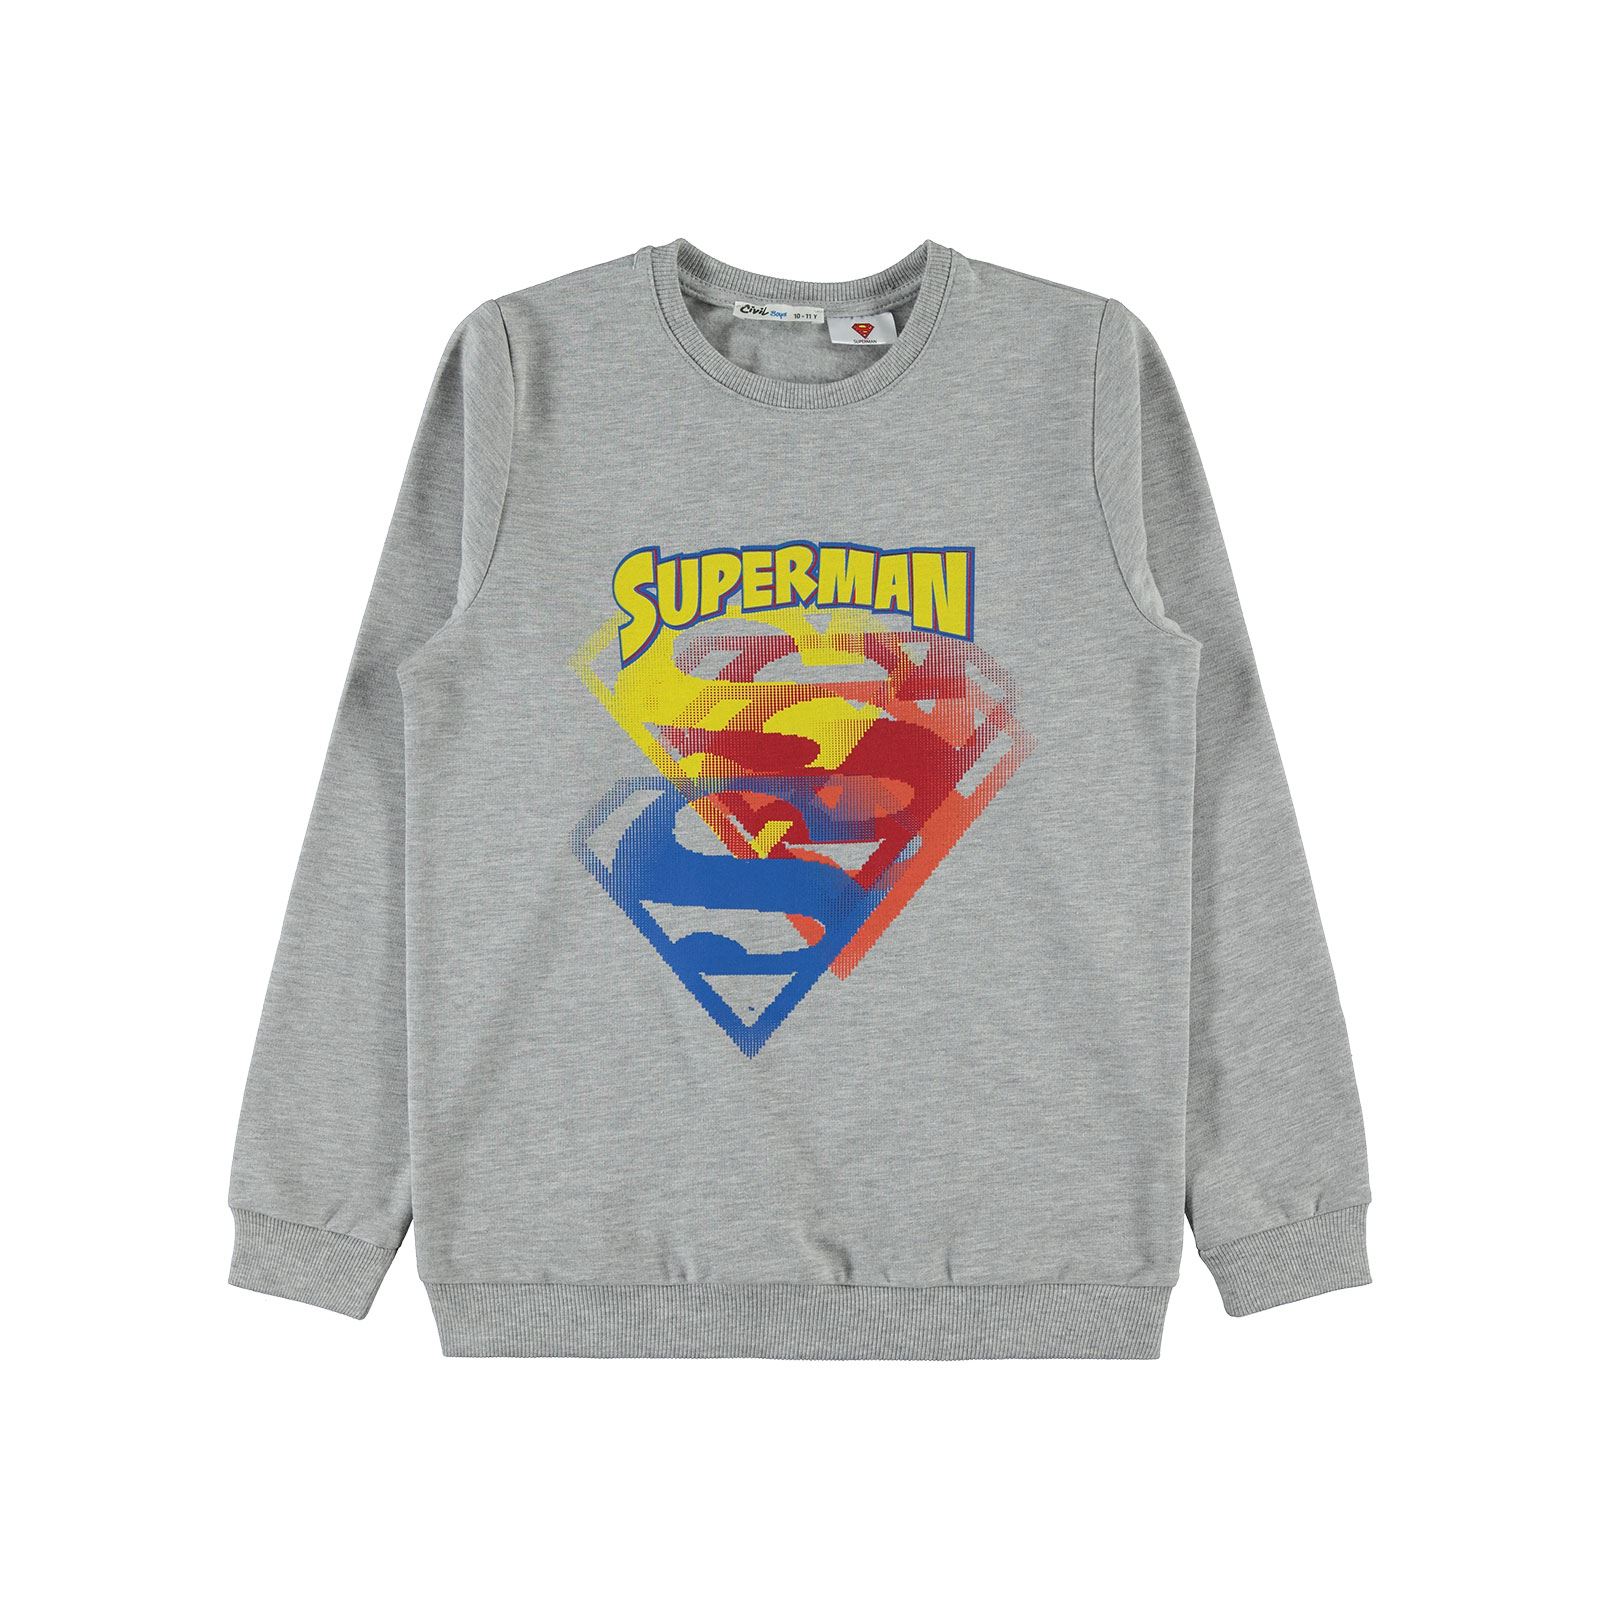 Superman Erkek Çocuk Sweatshirt 10-13 Yaş Grimelanj